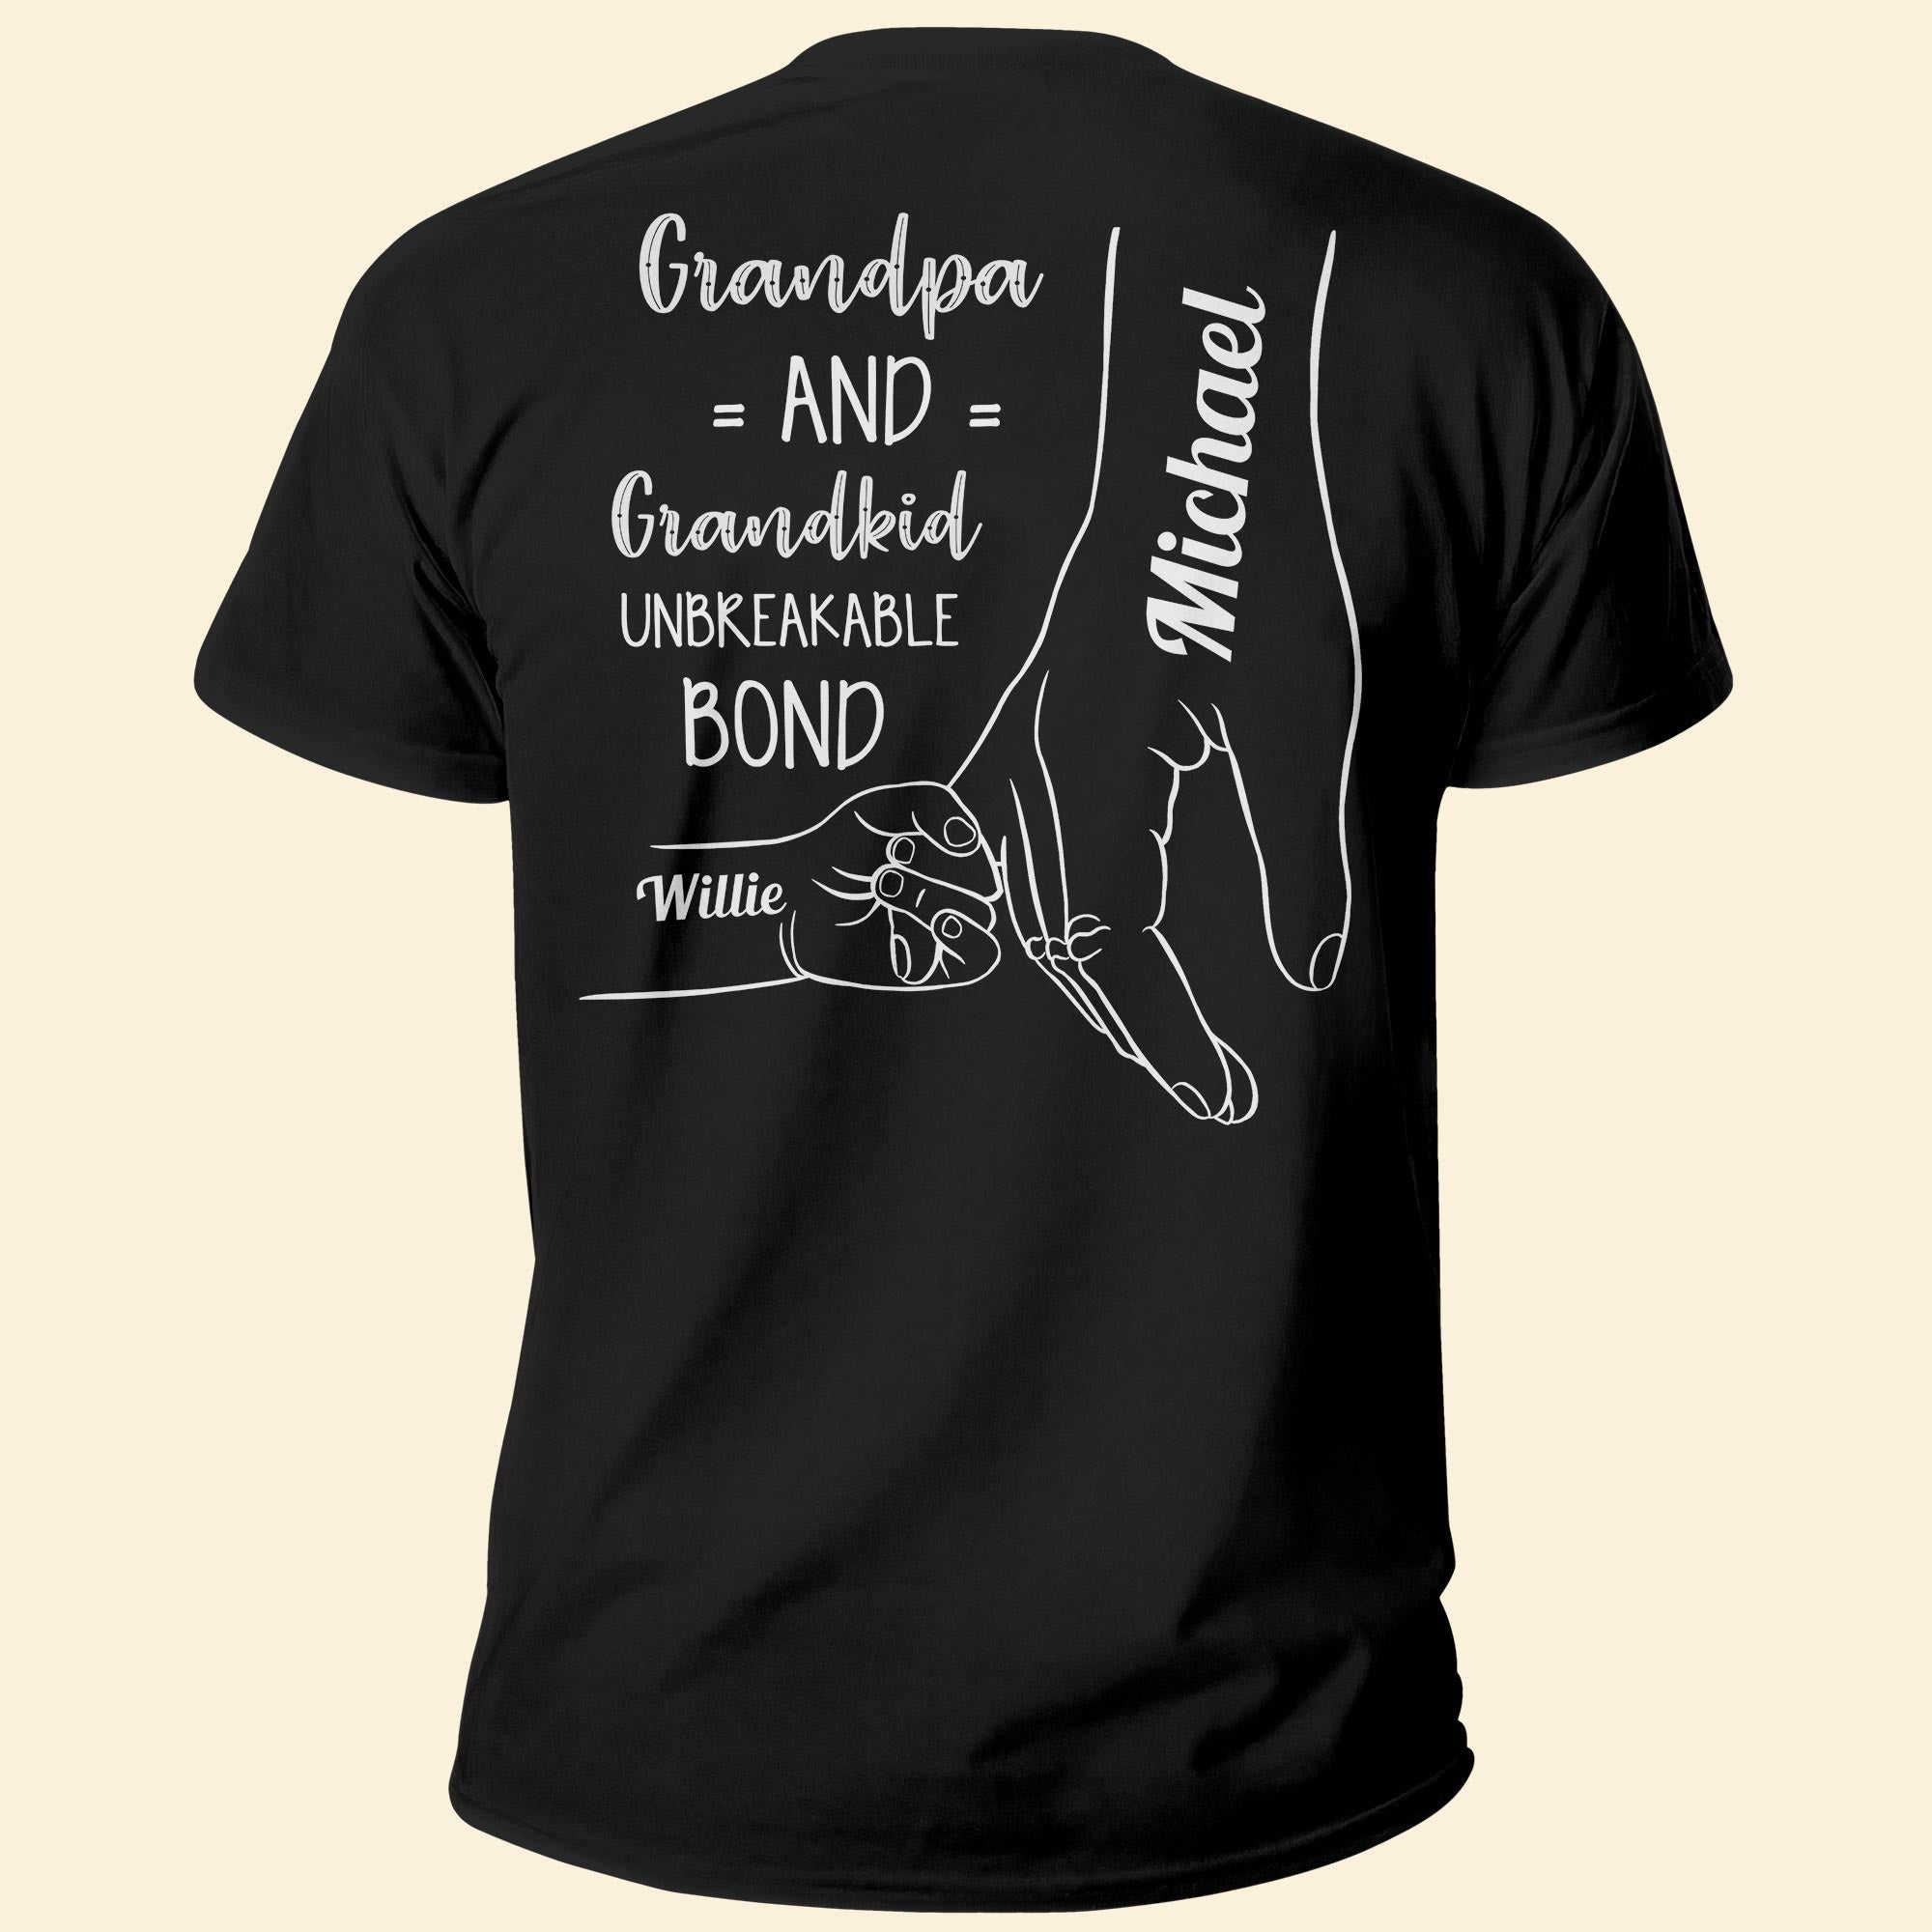 Unbreakable Bond Between Grandpa And Grandkids - Personalized Shirt - Birthday, Loving Gift For Grandparent, Grandpa & Grandkids